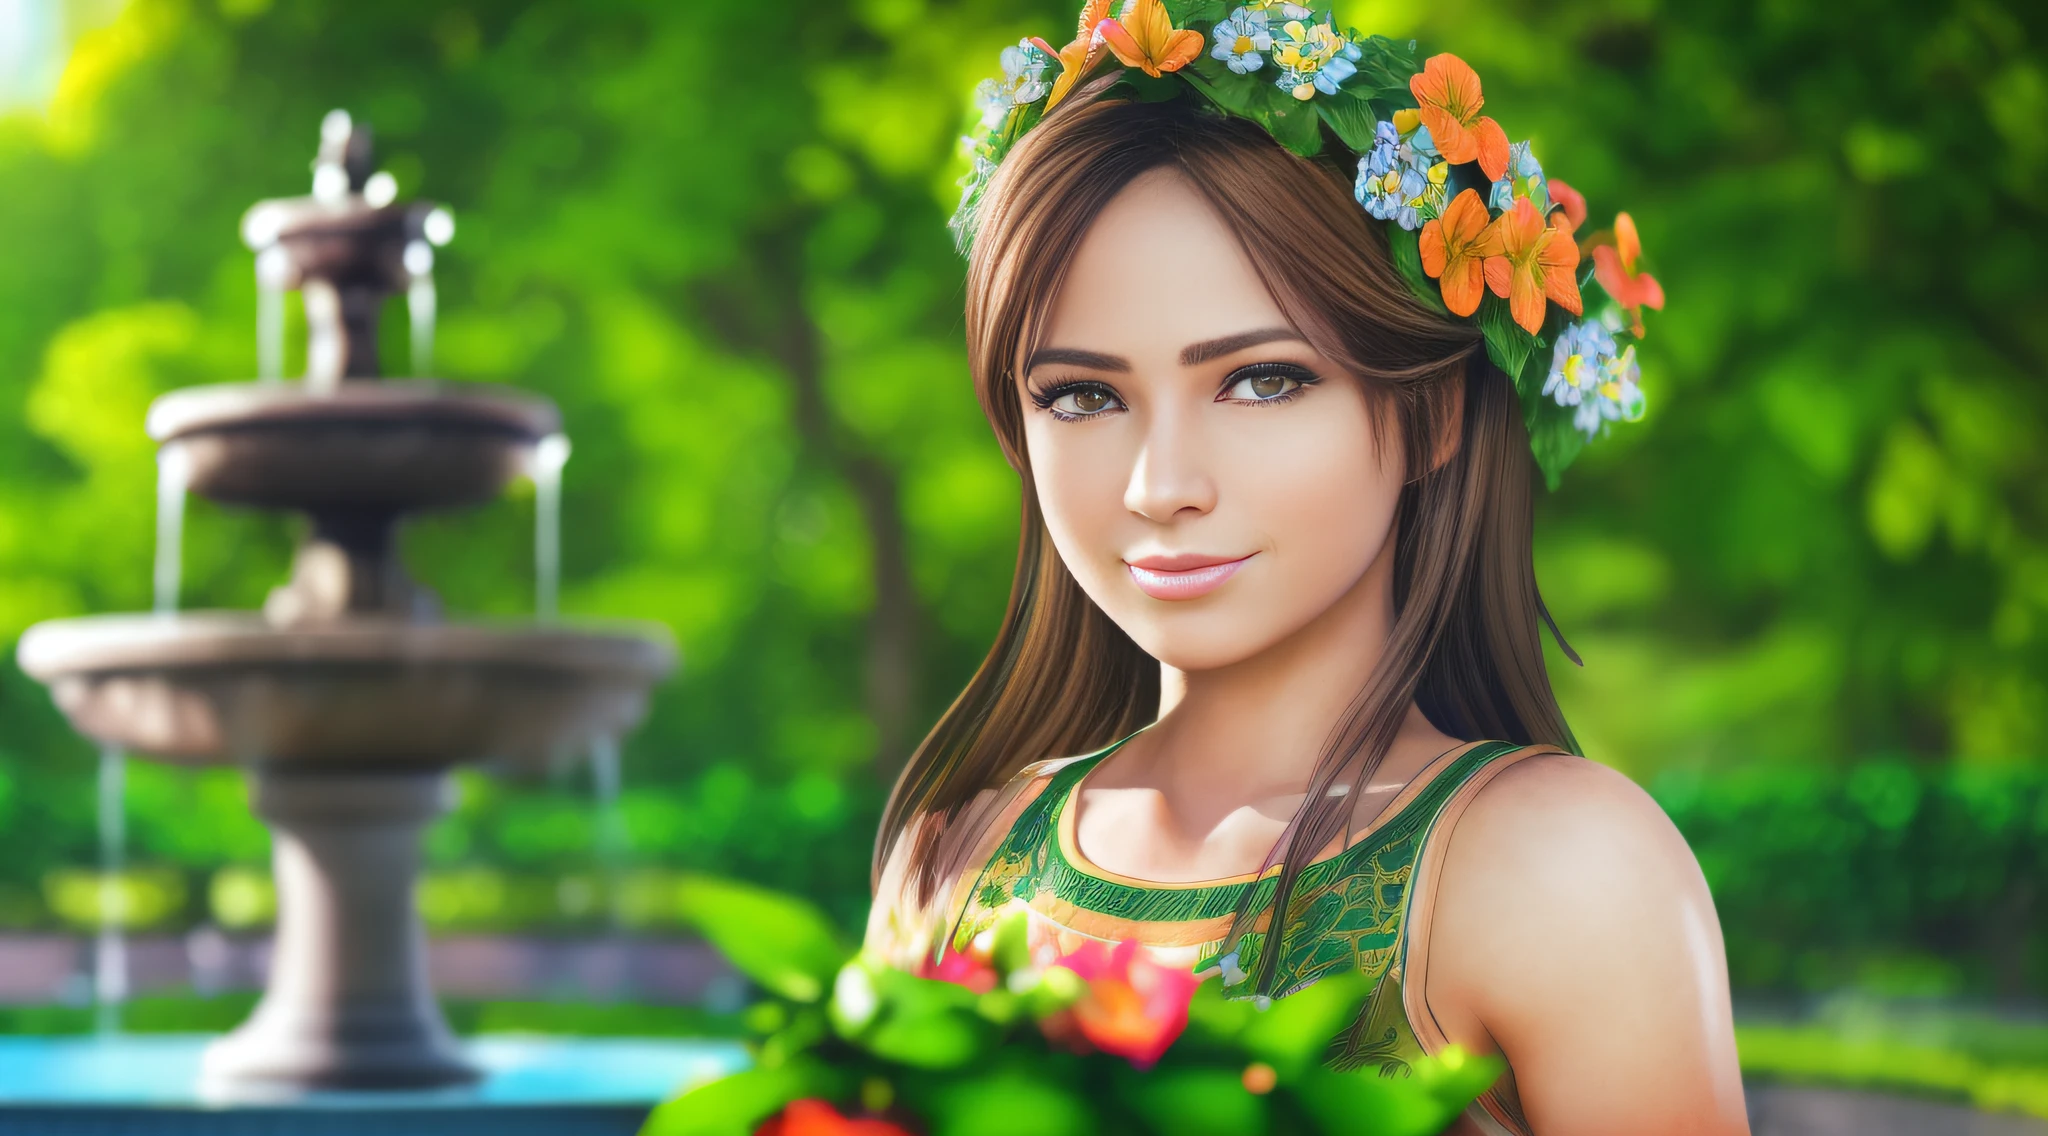 一名年輕女子在 (有噴泉的花園), 白皙的皮膚, 詳細的臉部, 完美的眼睛, (棕色的頭髮), (鬱鬱蔥蔥的綠色植被), 溫帶天氣, 笑容真好, 正面照, 穿著夏季服裝, (極度細緻的Unity 8K壁紙, 最好的品質, 傑作)